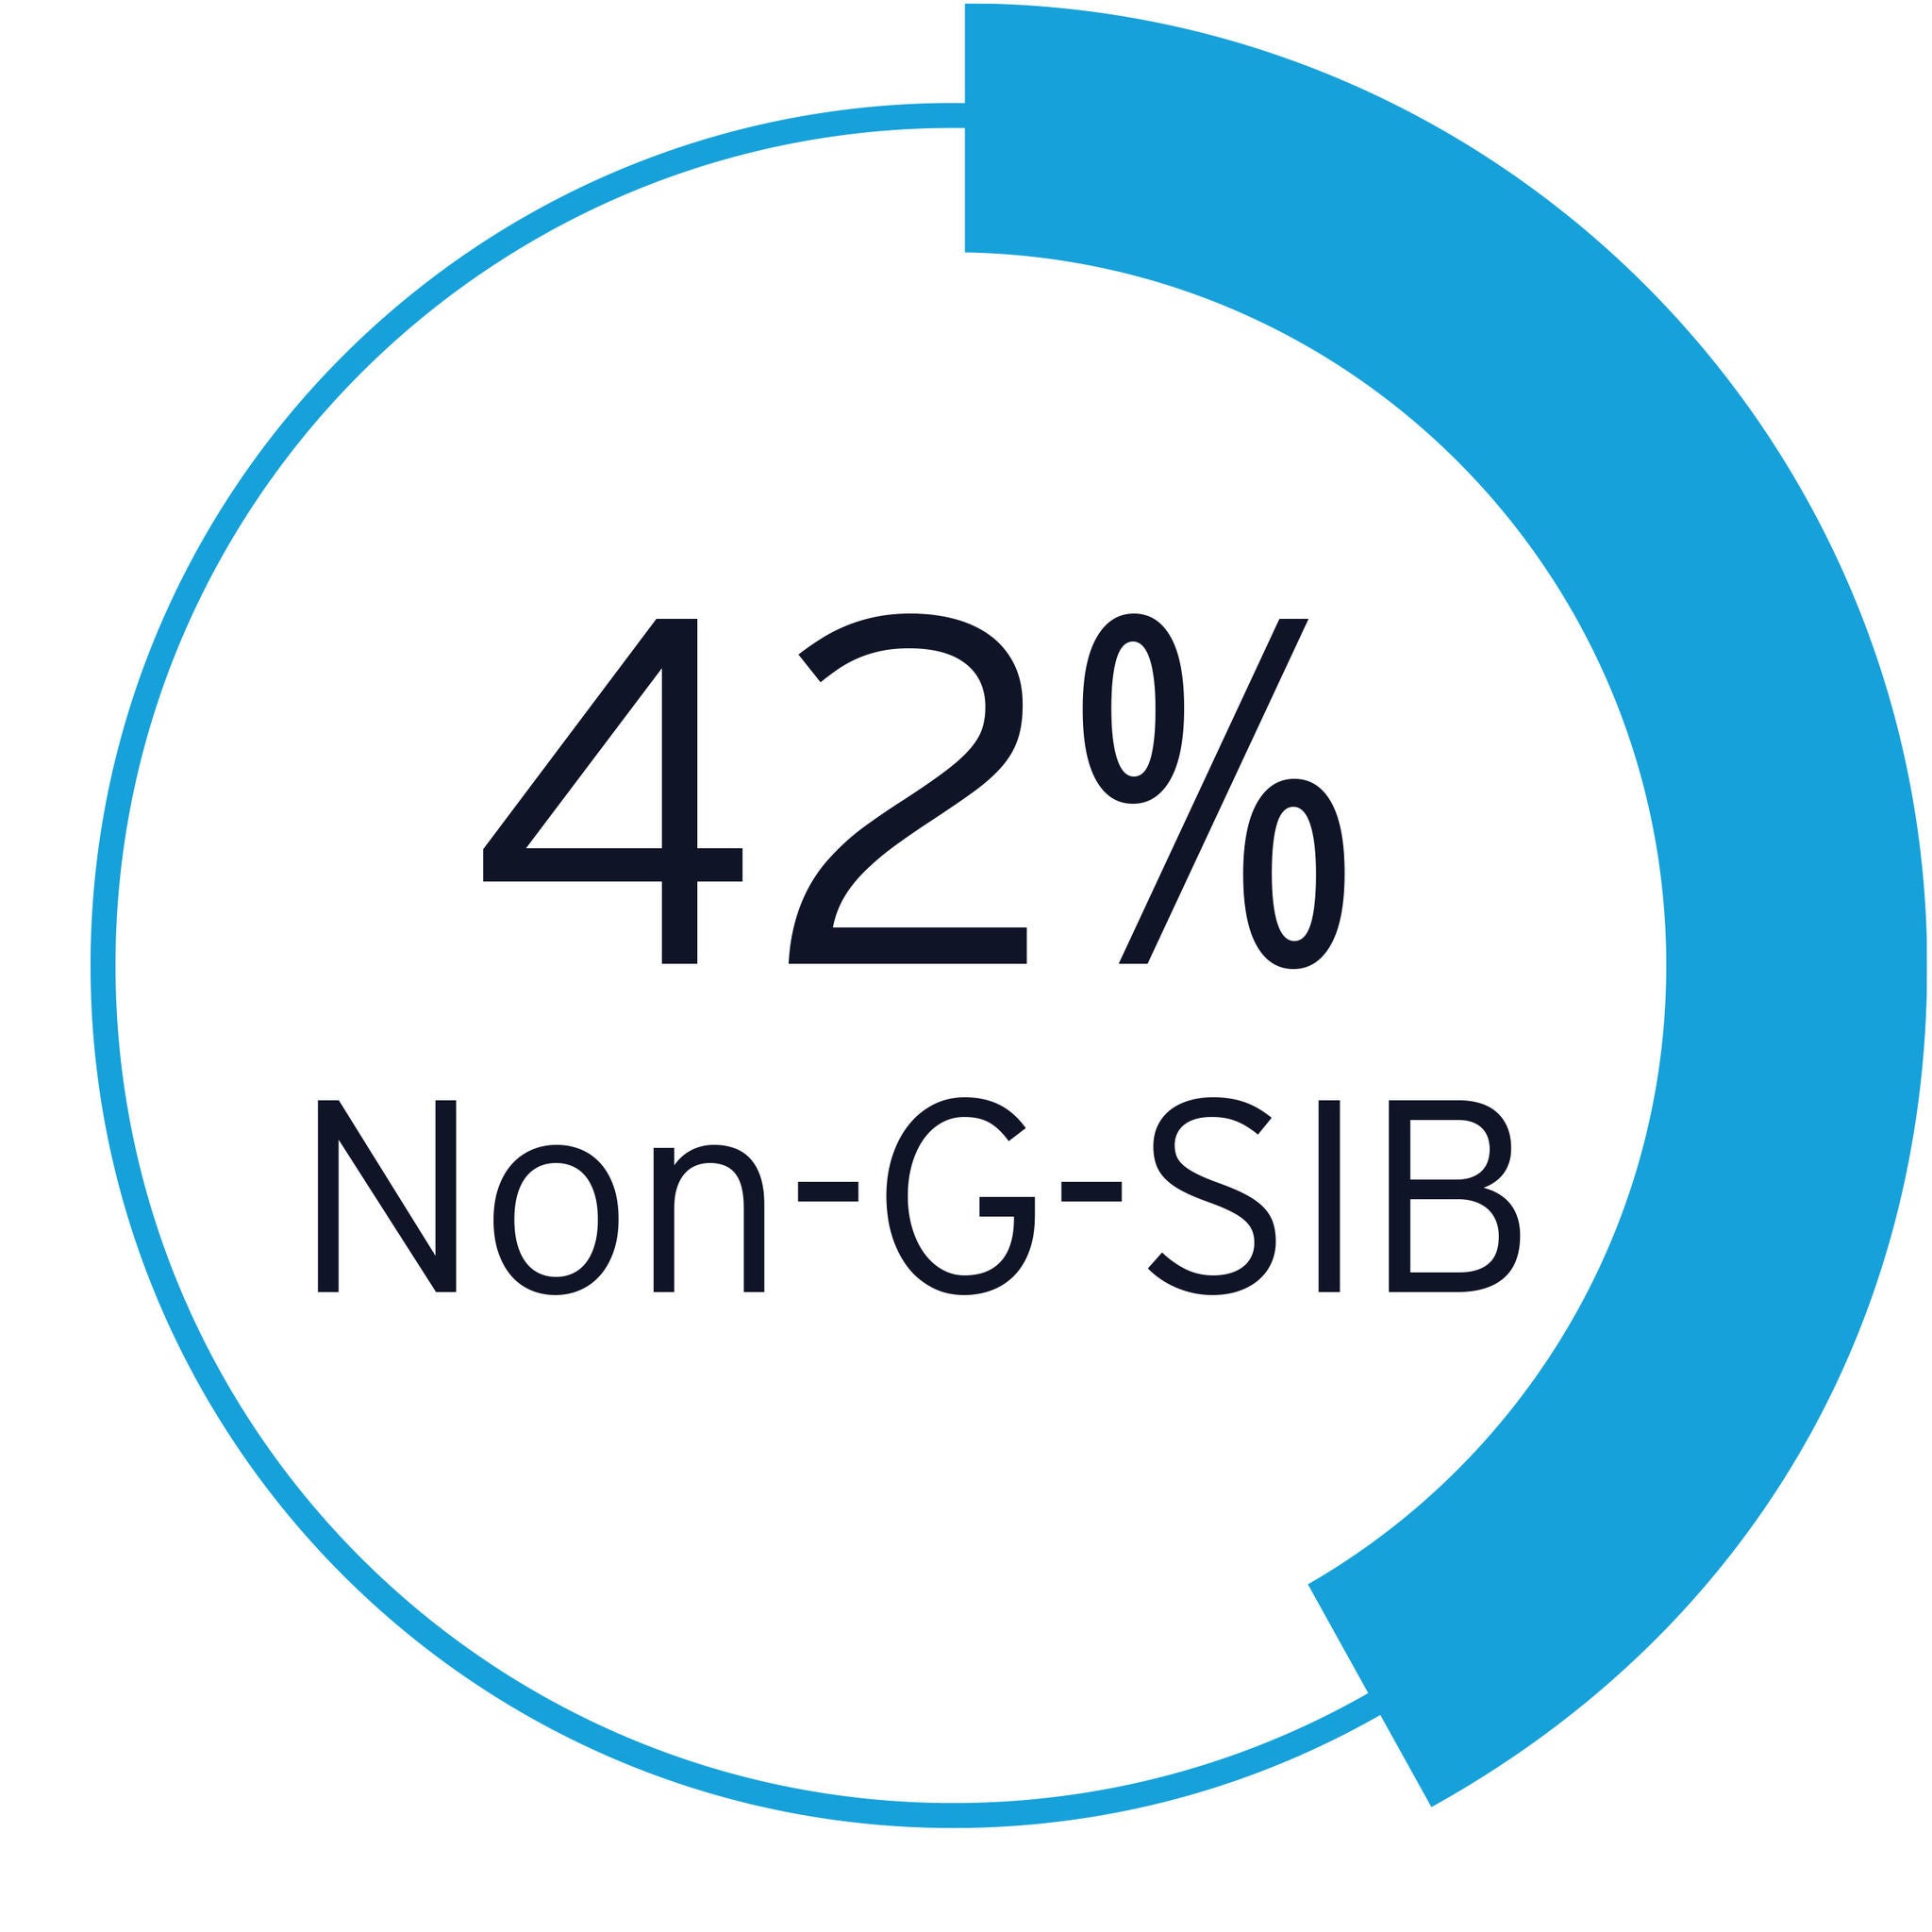 42% non-g-sib